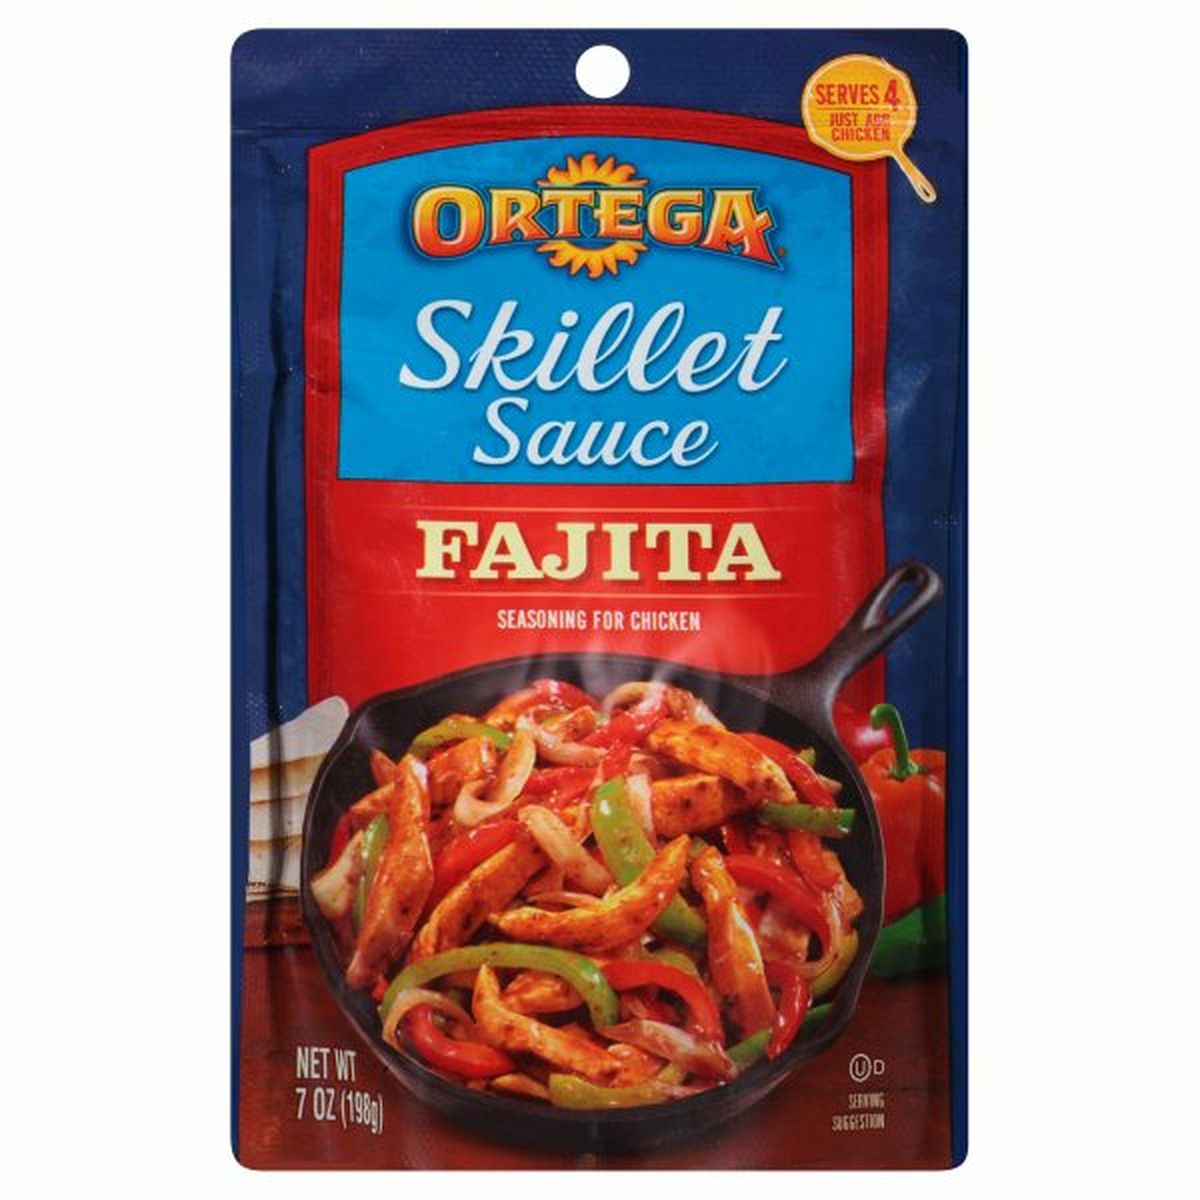 Calories in Ortega Skillet Sauce, Fajita